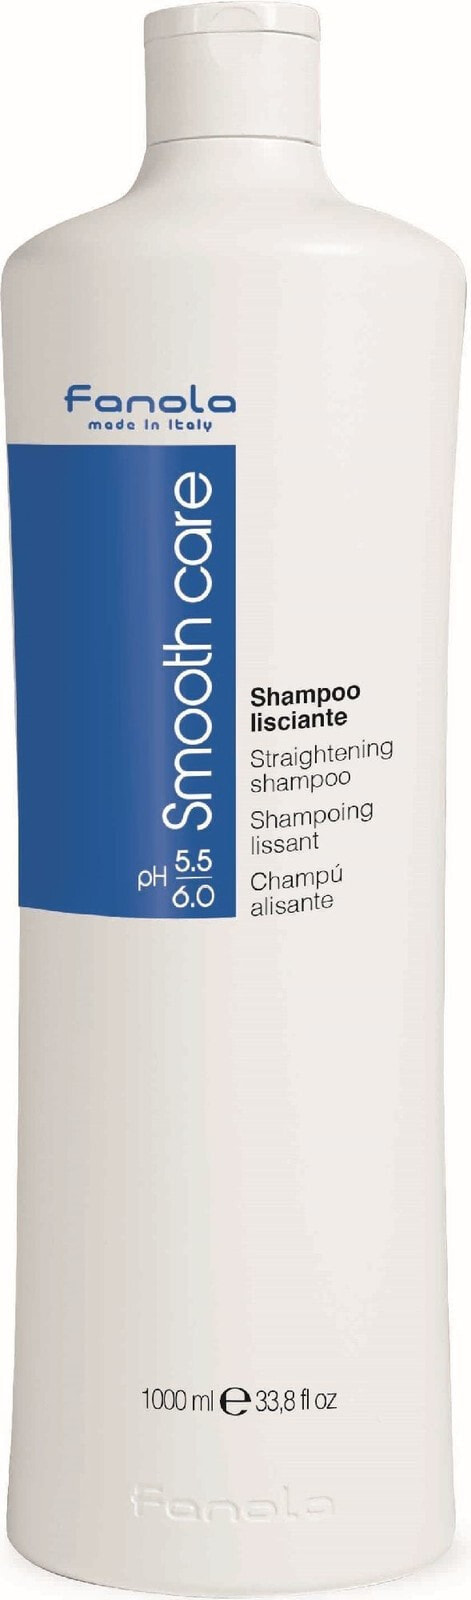 Fanola Smooth Care Straightening Shampoo Выпрямляющий и разглаживающий шампунь с хлопковым маслом для непослушных волос 1000 мл